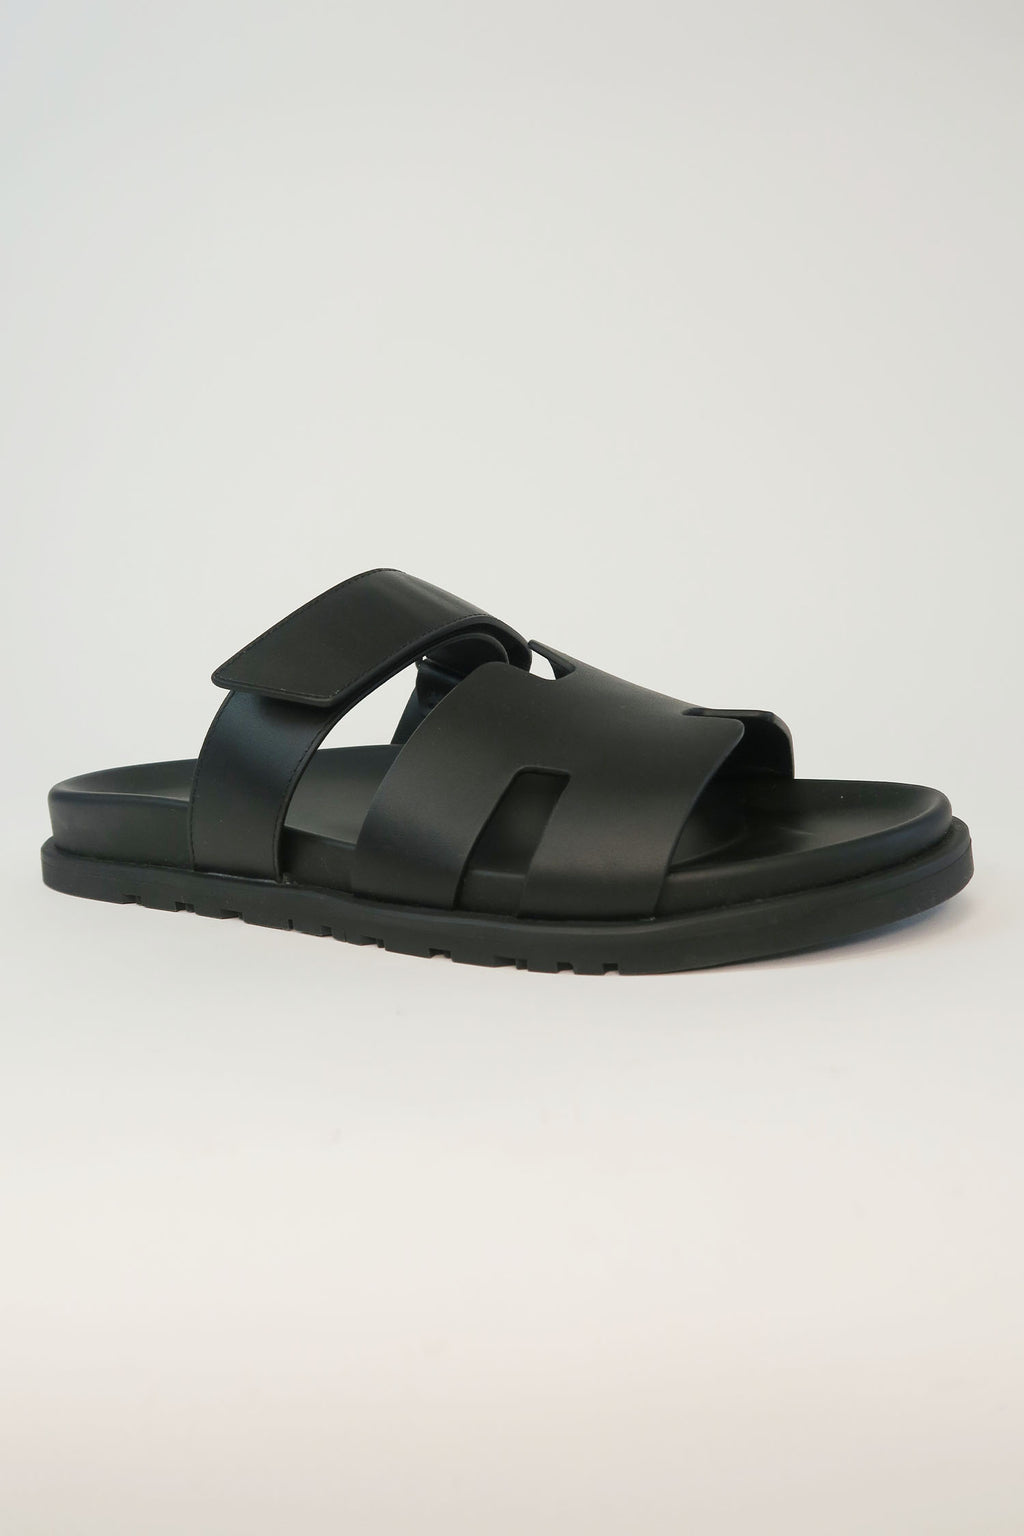 Hermès Chypre Leather Slides sz 42